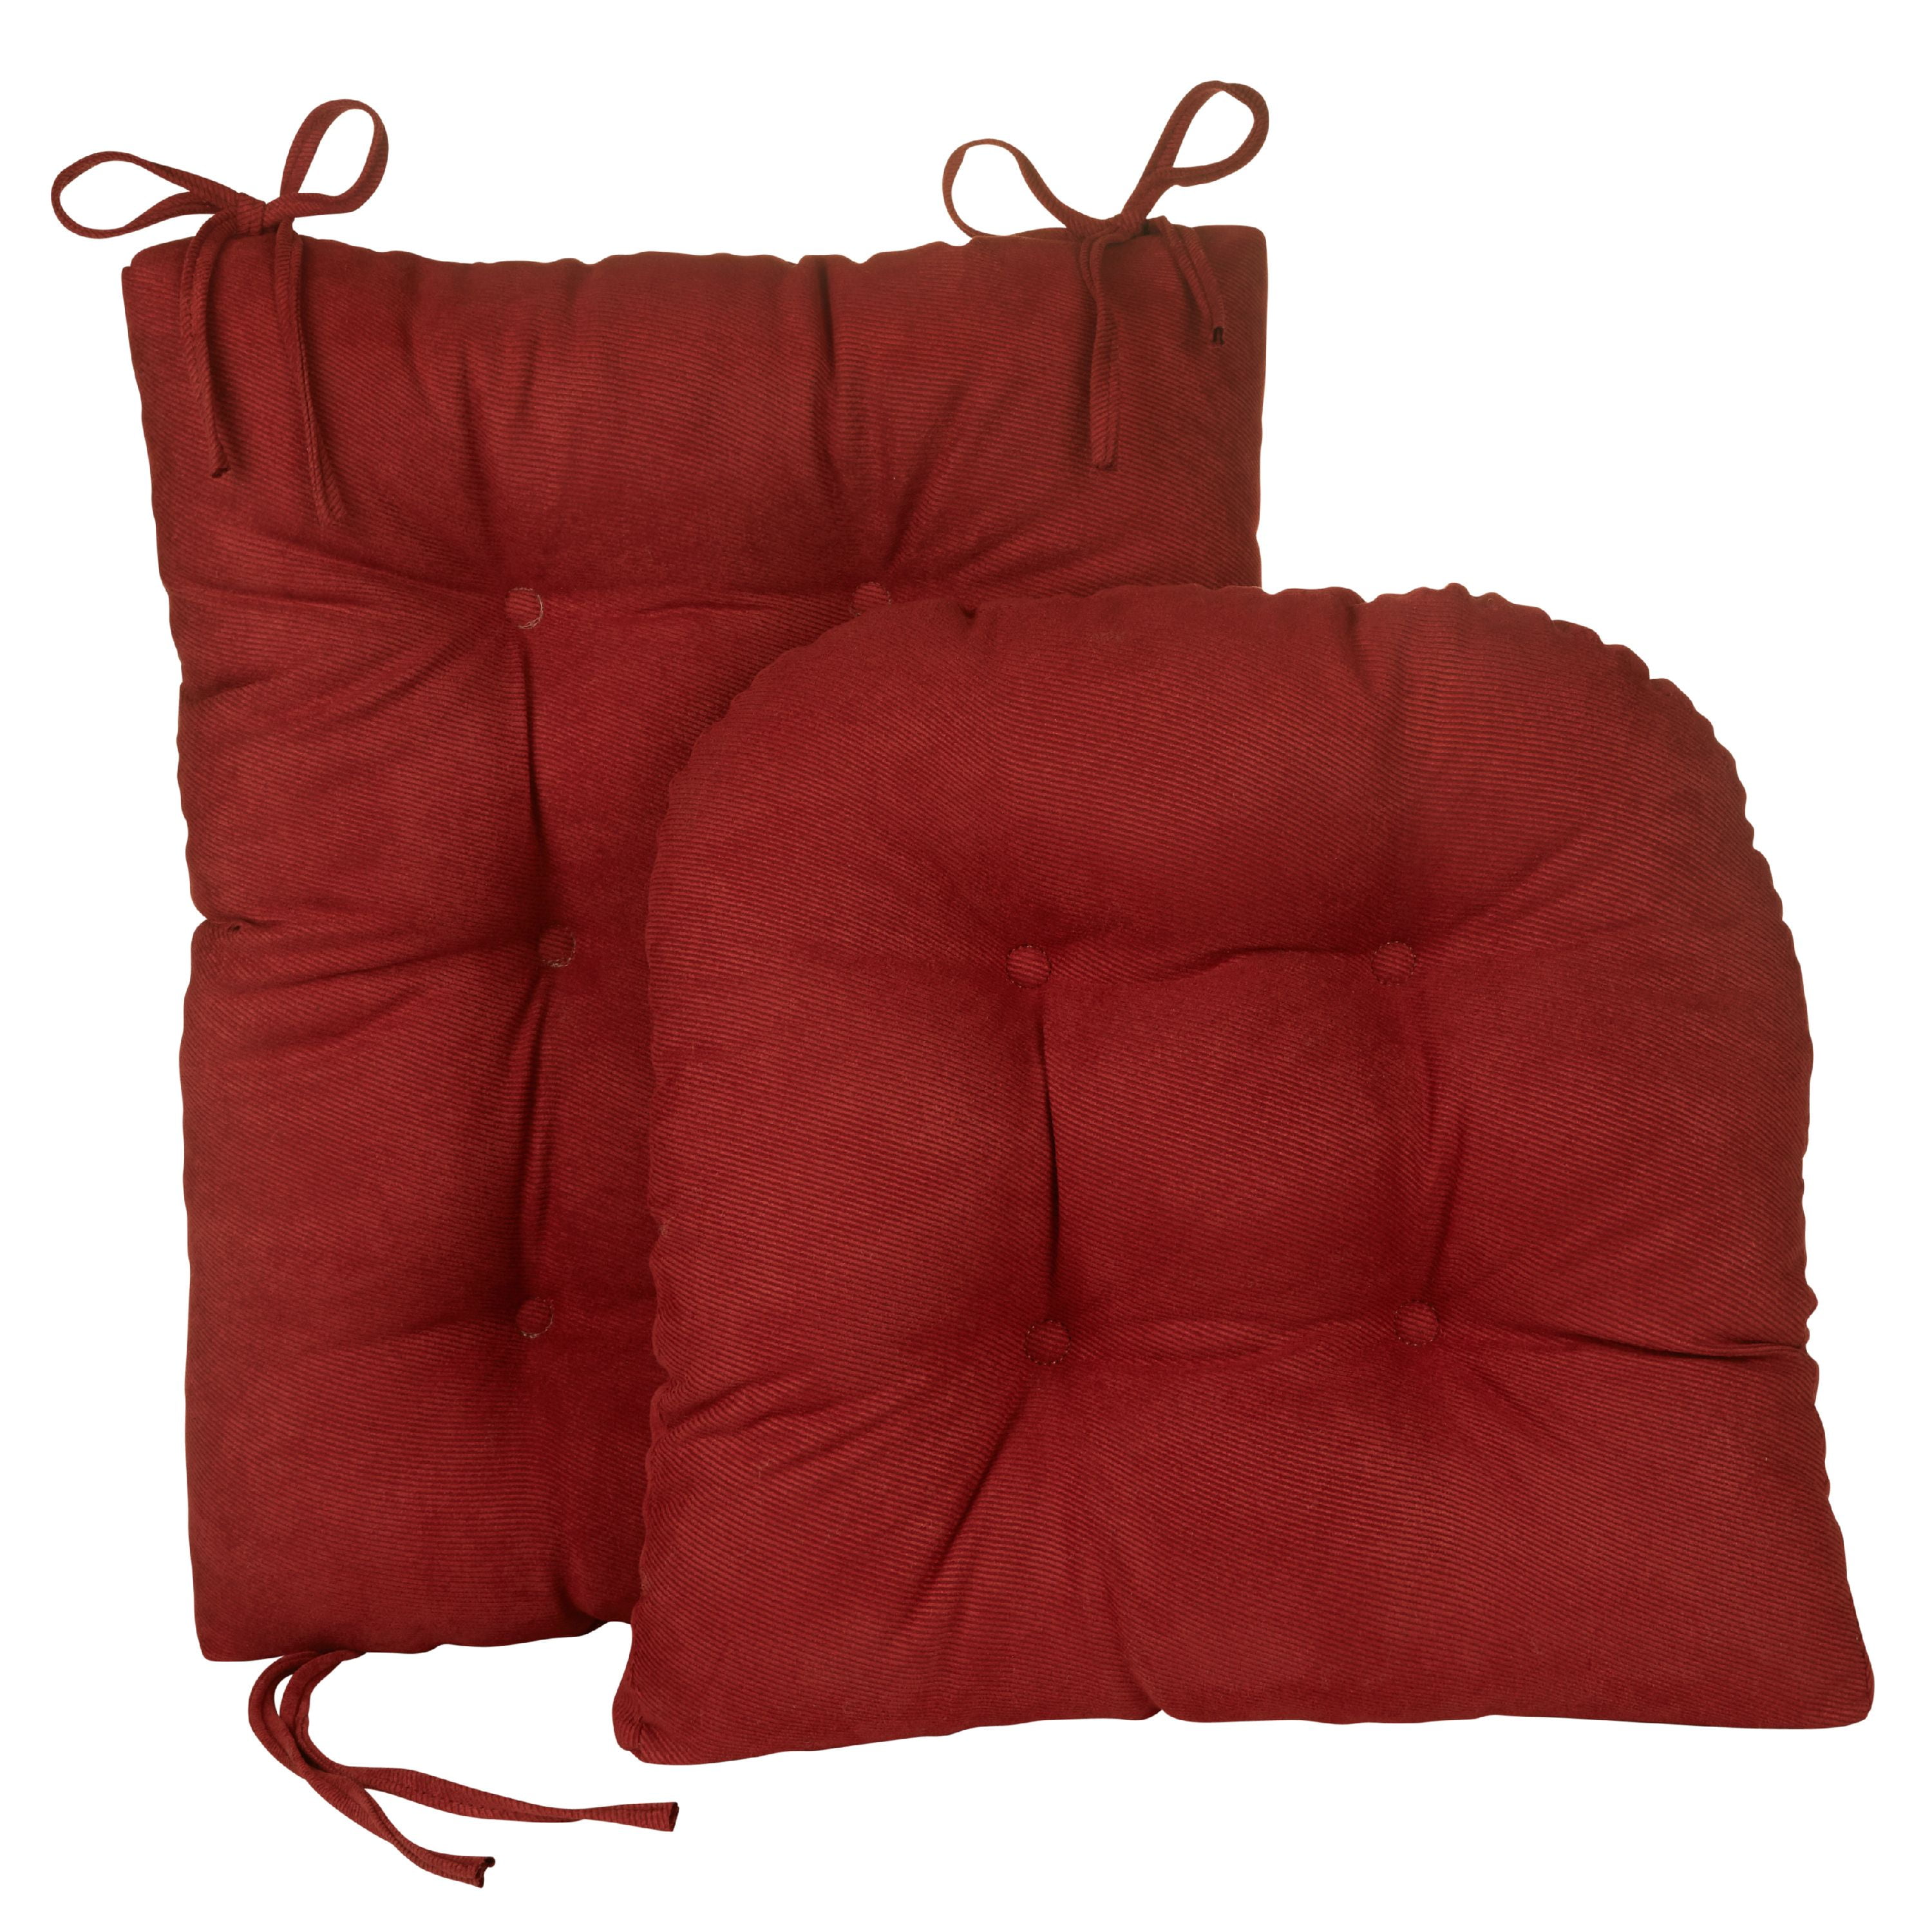 Nouveau Gripper Jumbo Rocking Chair Cushions 